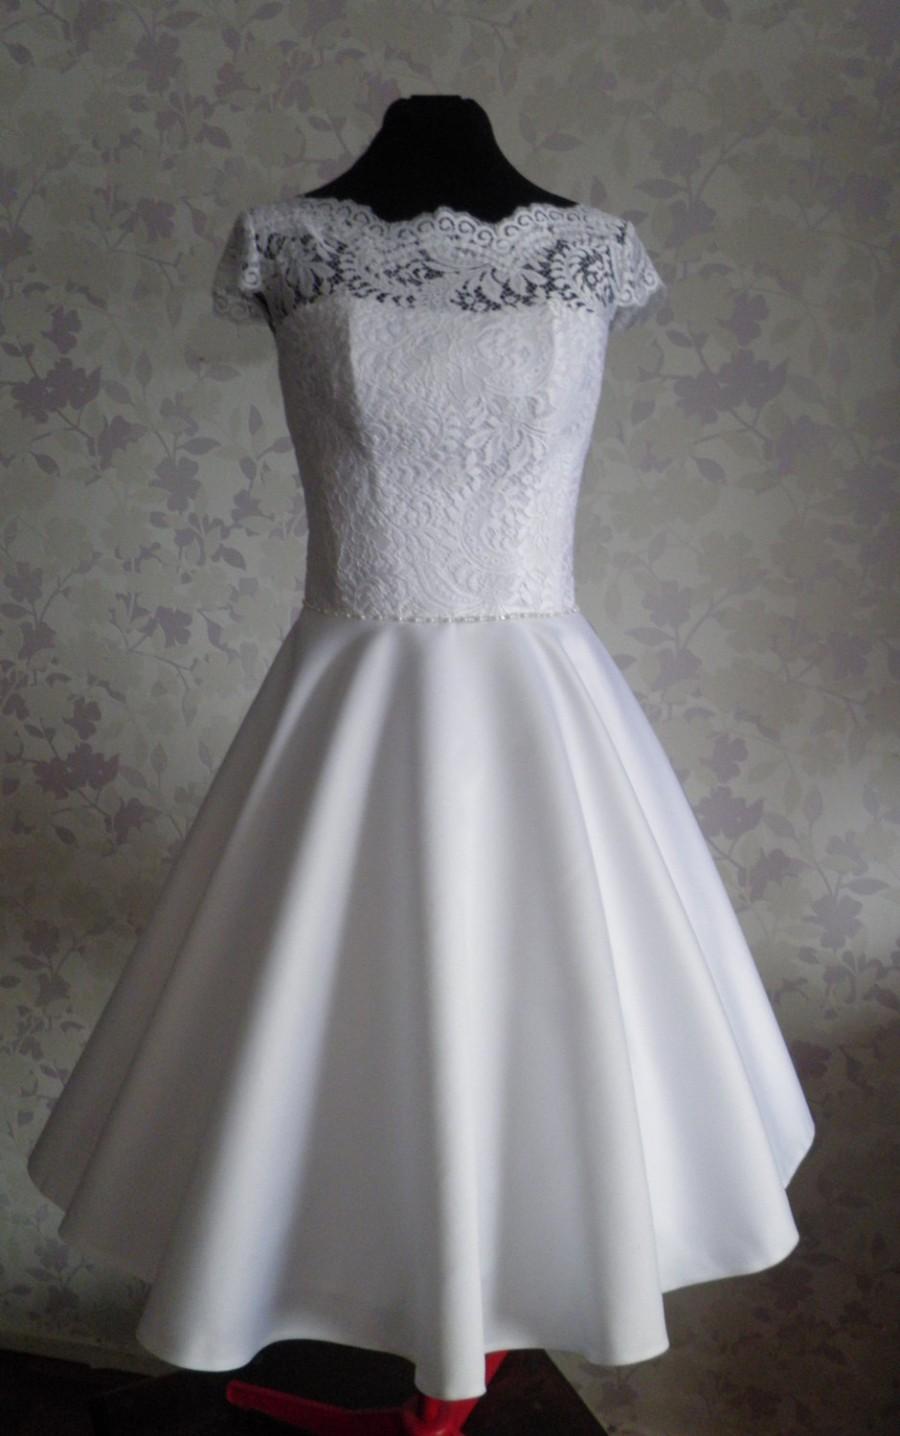 زفاف - Vintage Inspired Wedding Dress in style of Audrey Hepburn 1950 with Tea Length Skirt, Illusion Neckline, Lace Corset, V Shaped Back Cutout